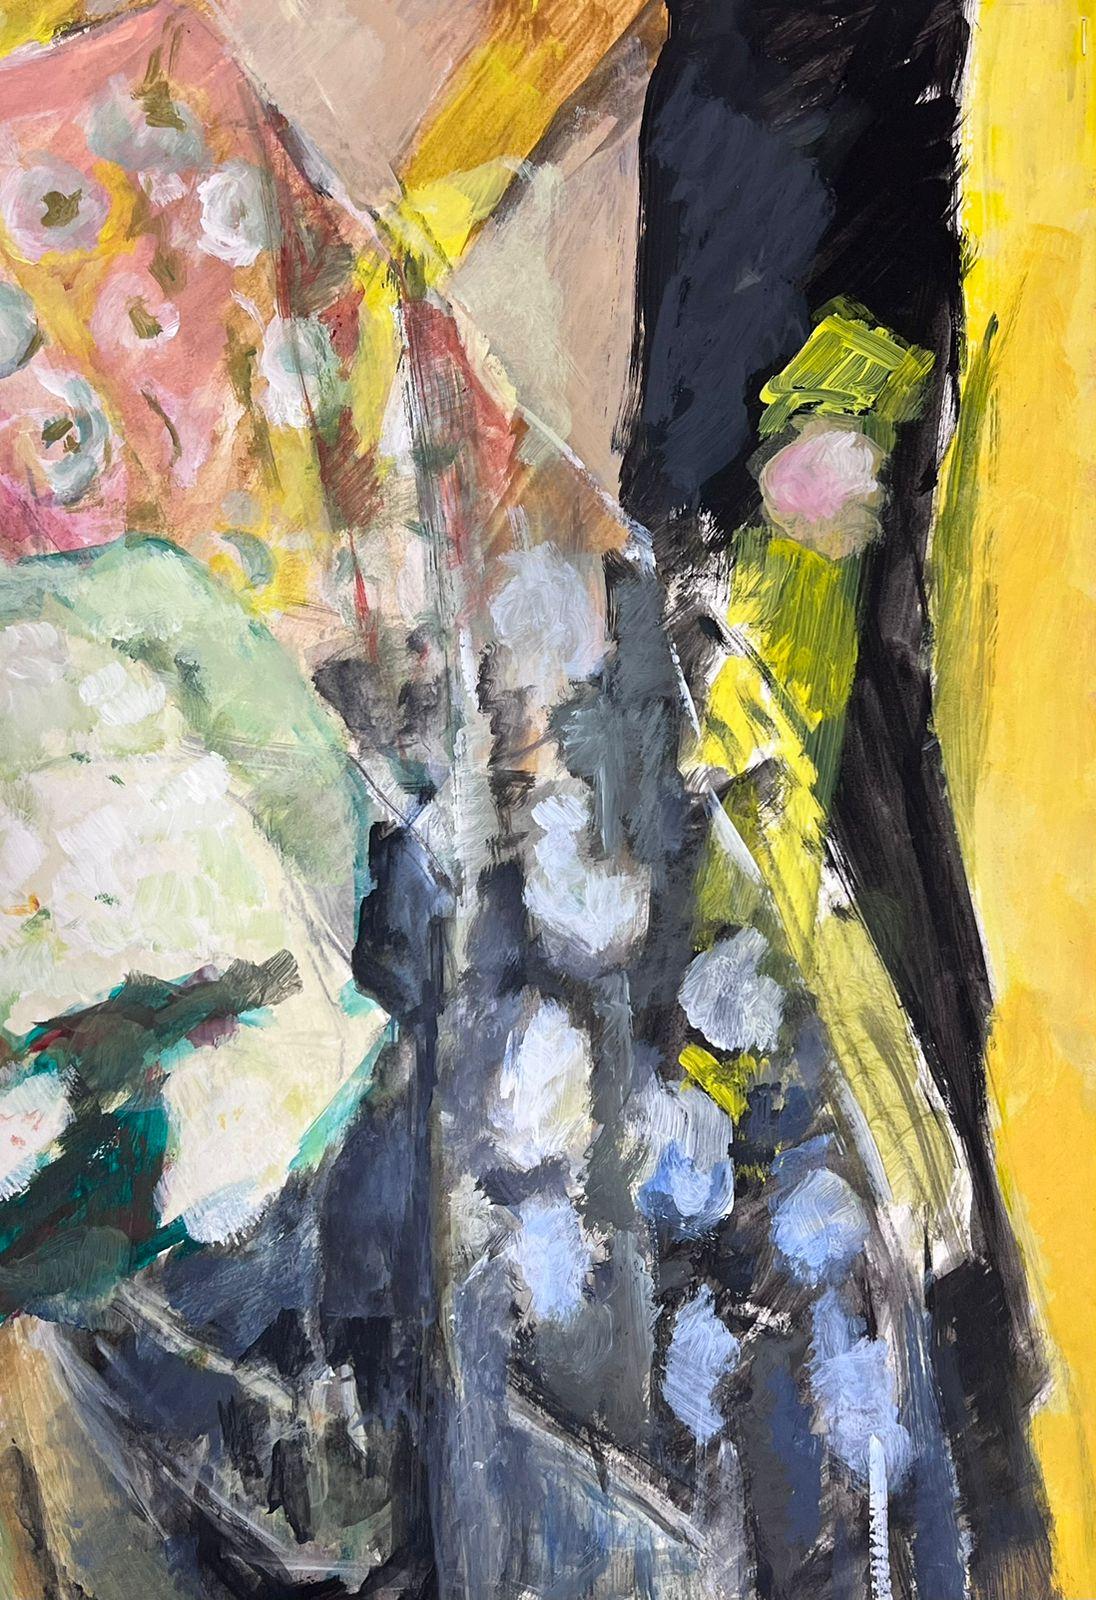 Weiße Blume Stillleben
von Guy Nicod
(Französisch 1923 - 2021)
Öl auf Künstlerpapier, ungerahmt
Gemälde : 25 x 19,5 Zoll
Herkunft: Künstlernachlass, Frankreich
Zustand: sehr guter und gesunder Zustand